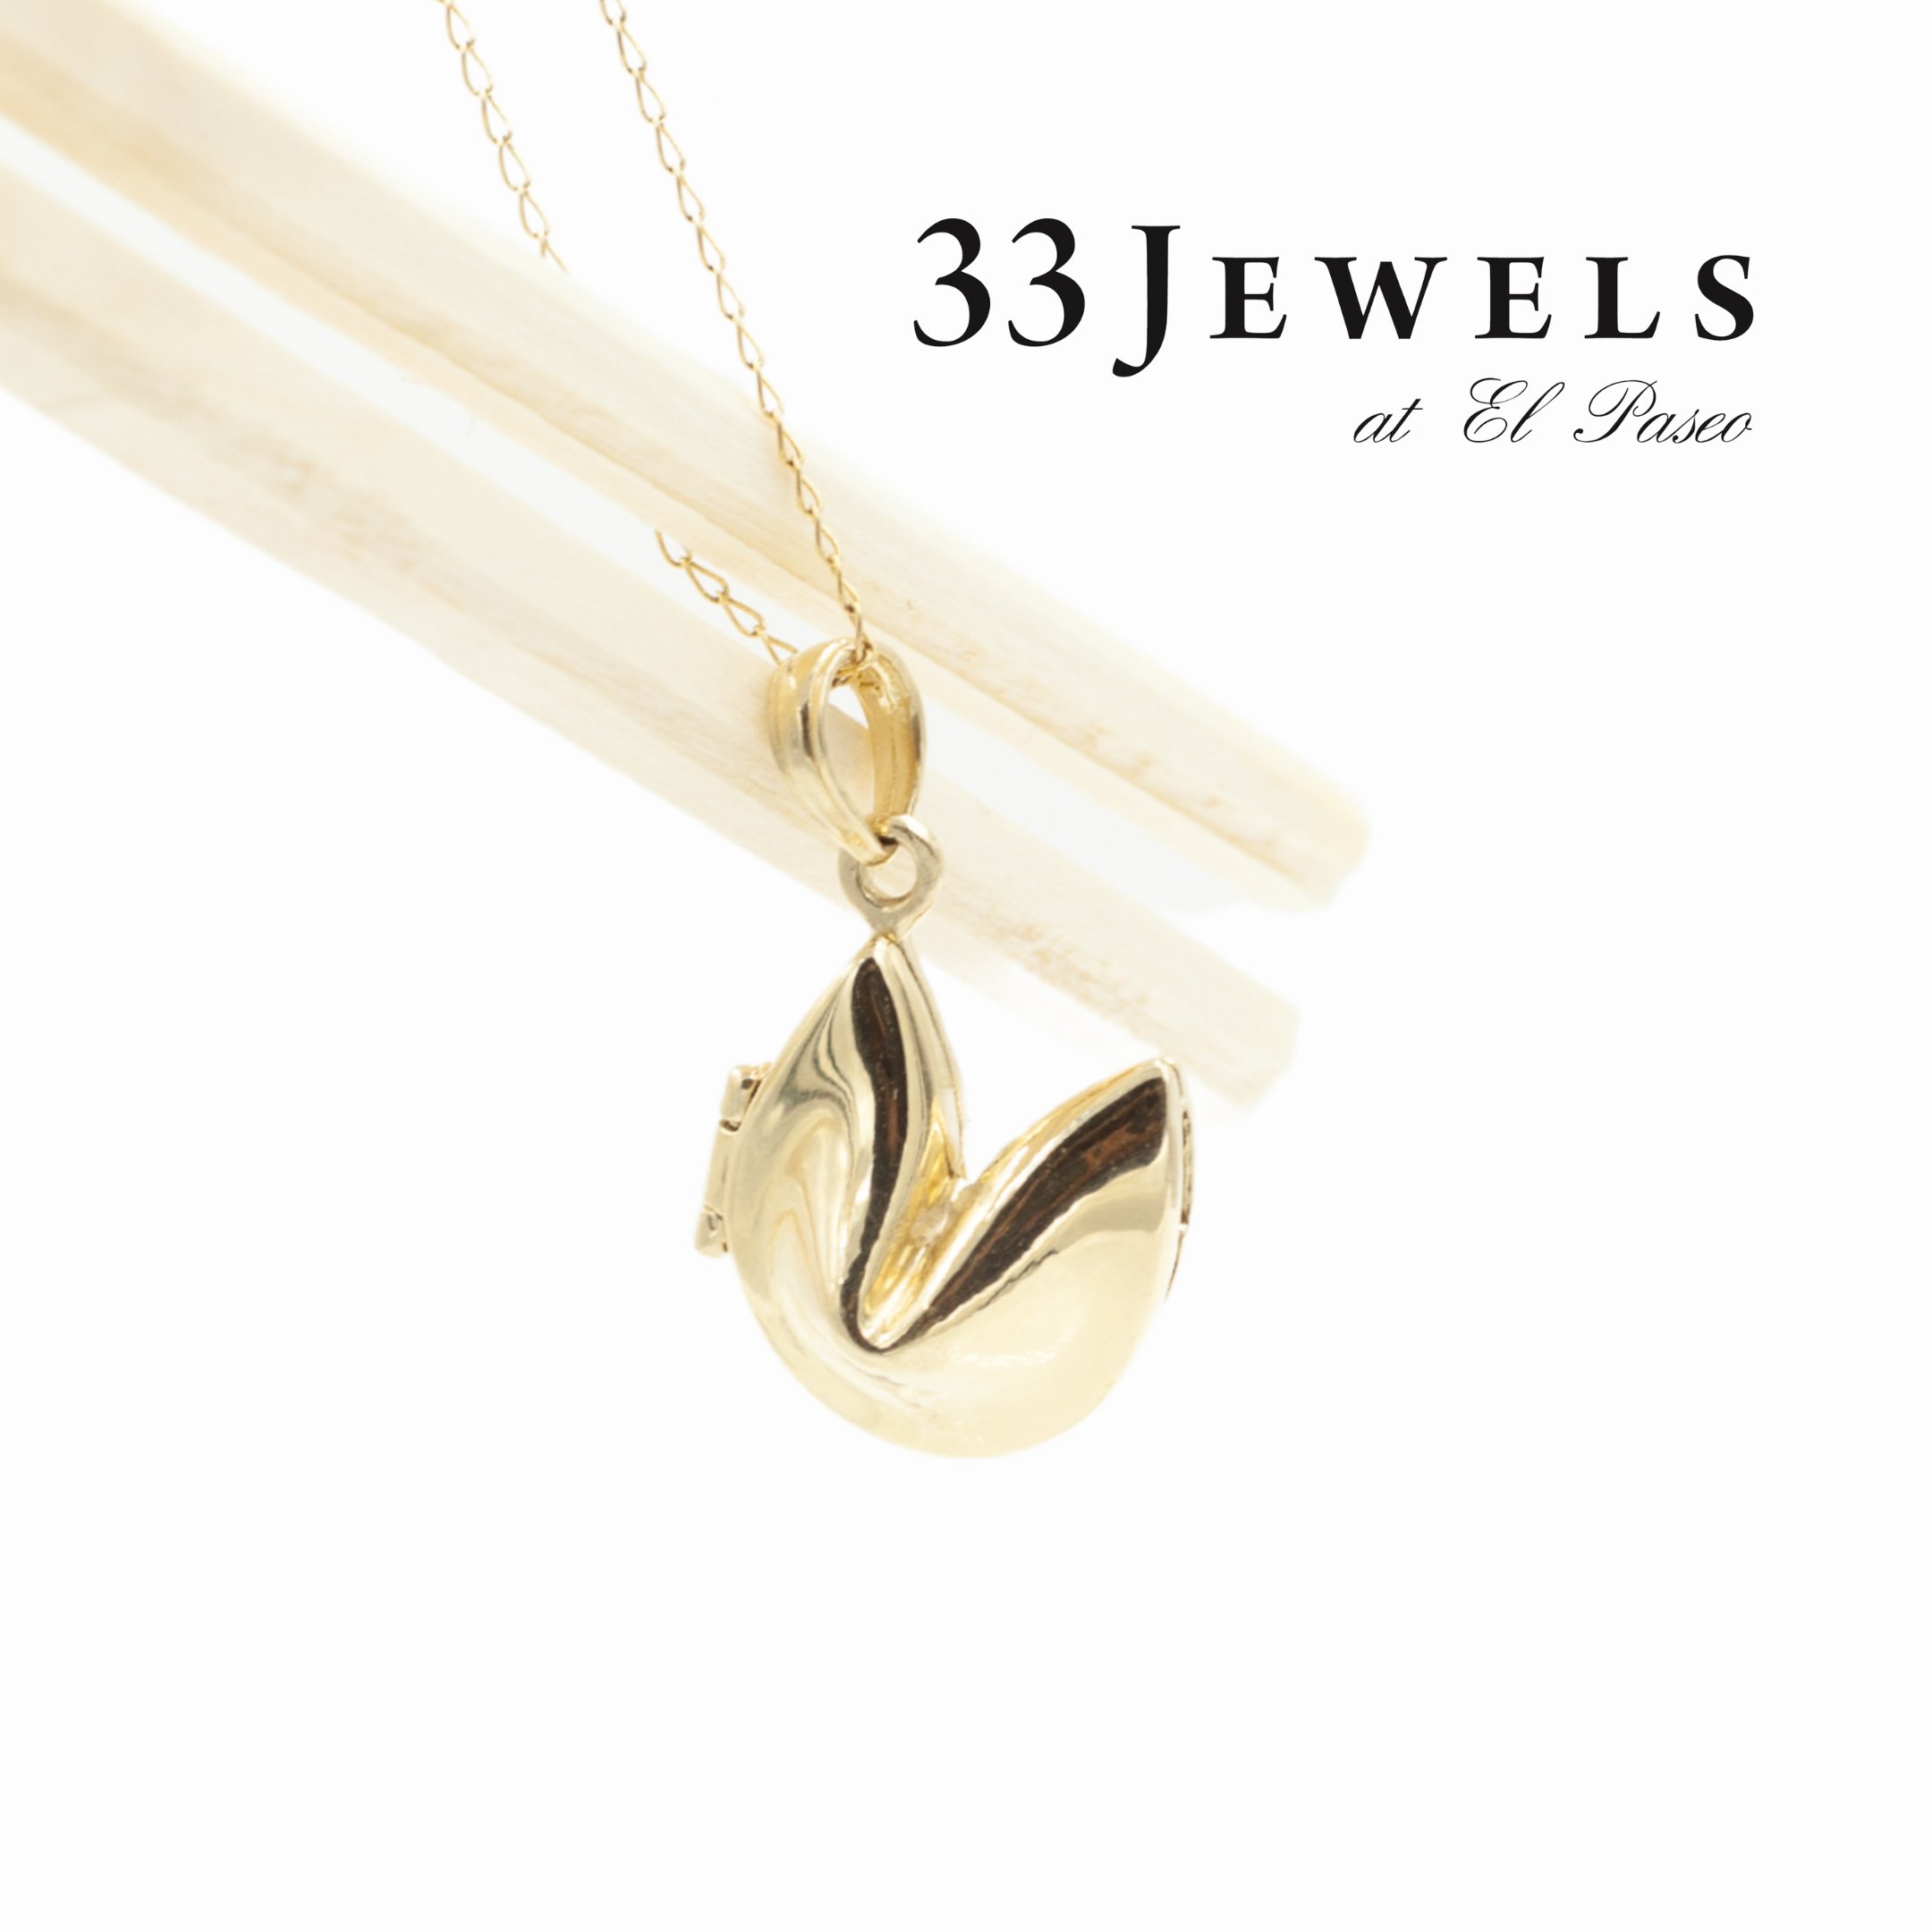 33 Jewels at El Paseo